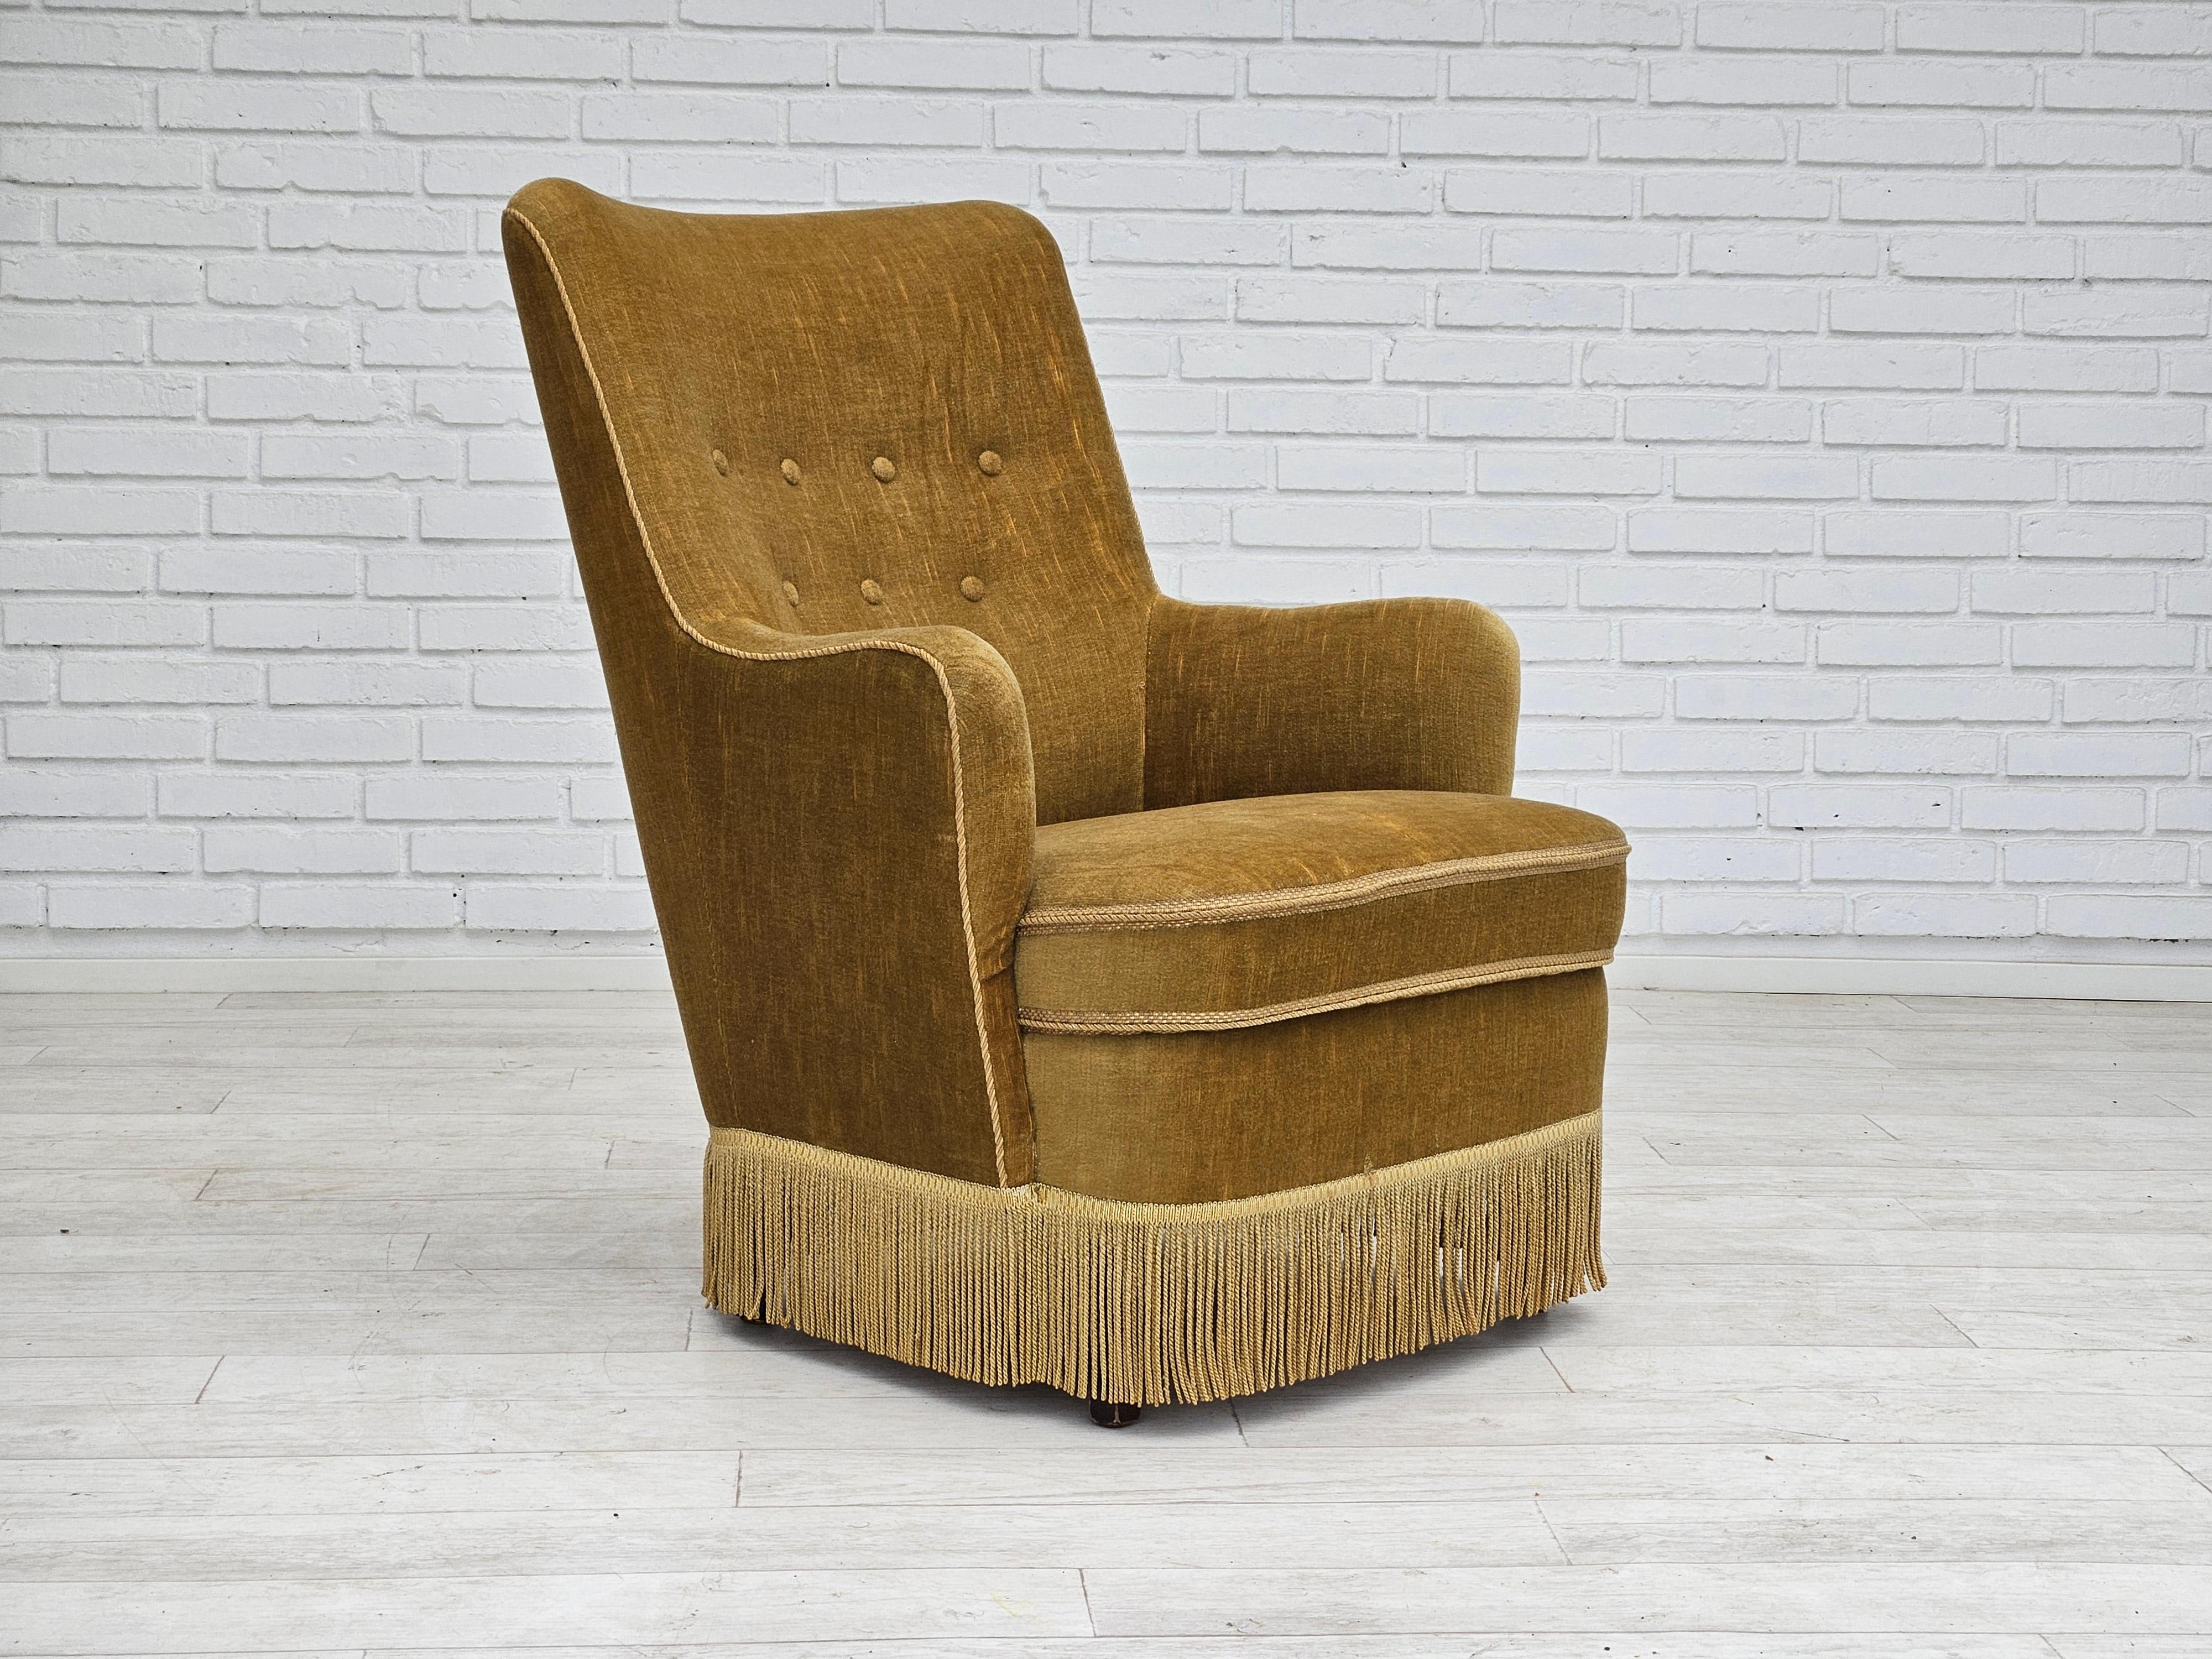 Fauteuil danois des années 1960 en velours vert clair. Très bon état d'origine : pas d'odeurs ni de taches. Pieds en bois de hêtre. Ressorts dans le siège. Fabriqué par un fabricant de meubles danois vers 1960.